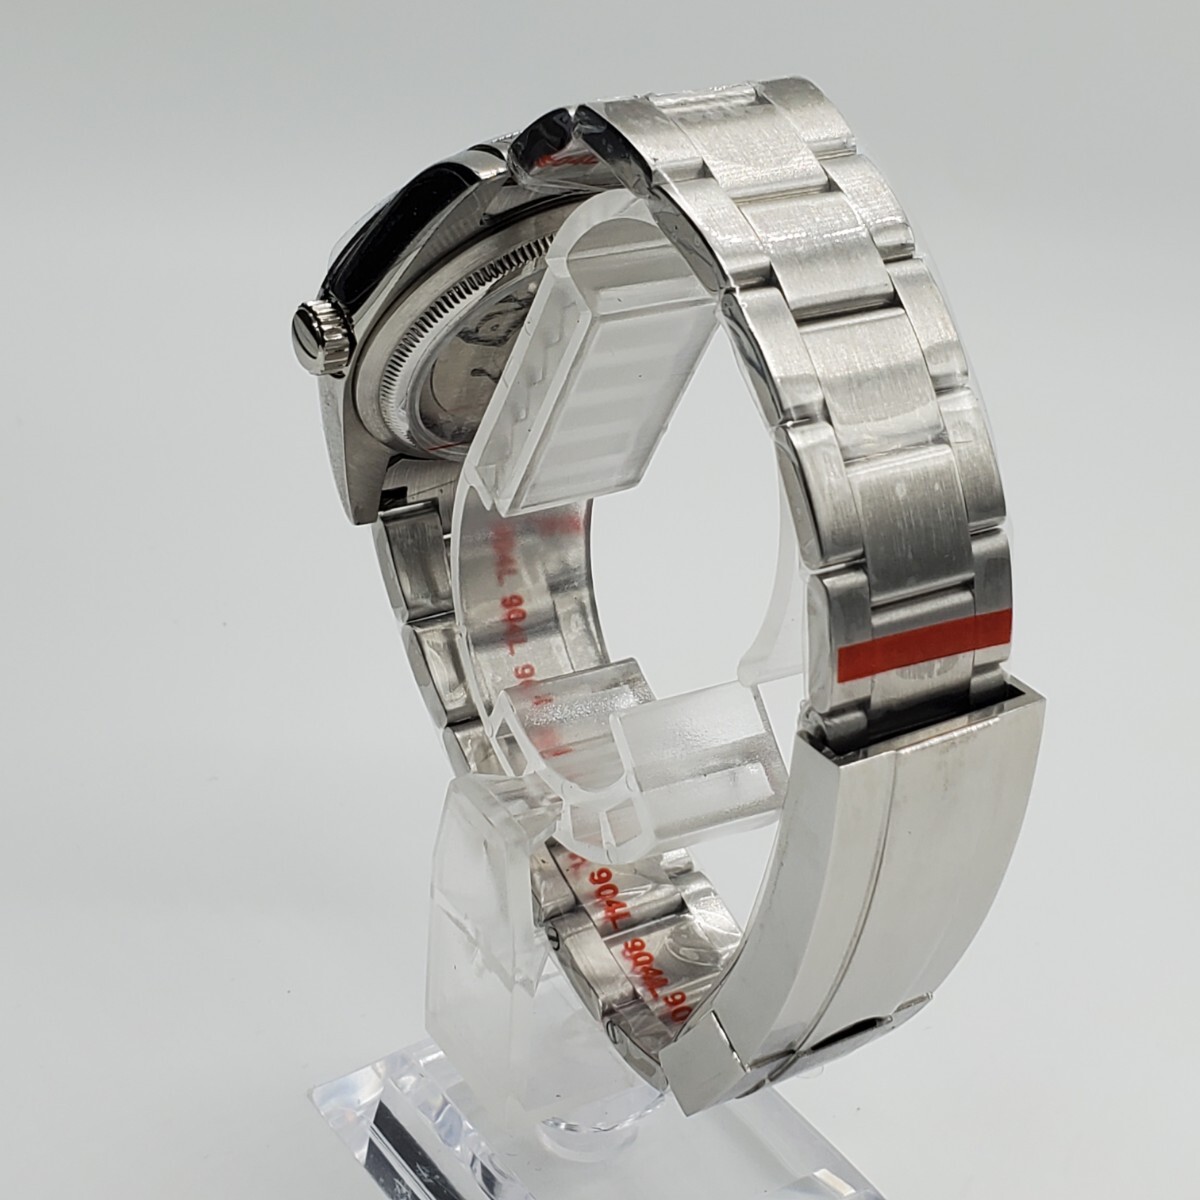 新品 自動巻 LARIMOKER ノーロゴ ブラック文字盤 36mm セイコー NH35 メンズ腕時計 機械式 サファイア風防 シースルーバック仕様_画像4